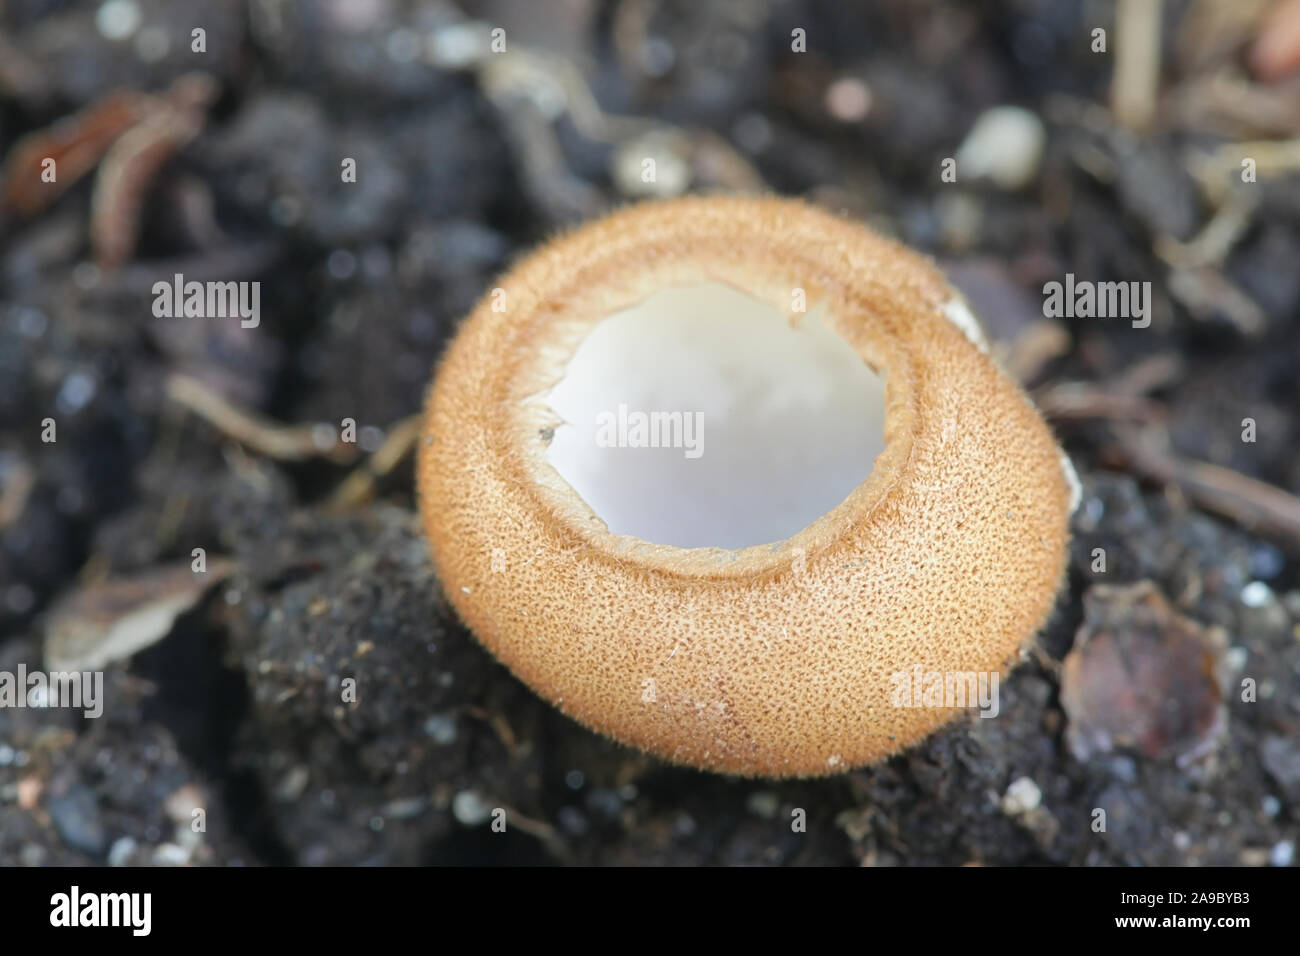 Humaria hemisphaerica, wie die haarigen fairy Cup bekannt, braun-haired fairy Tasse oder glasierte Schale, wilde Pilze aus Finnland Stockfoto